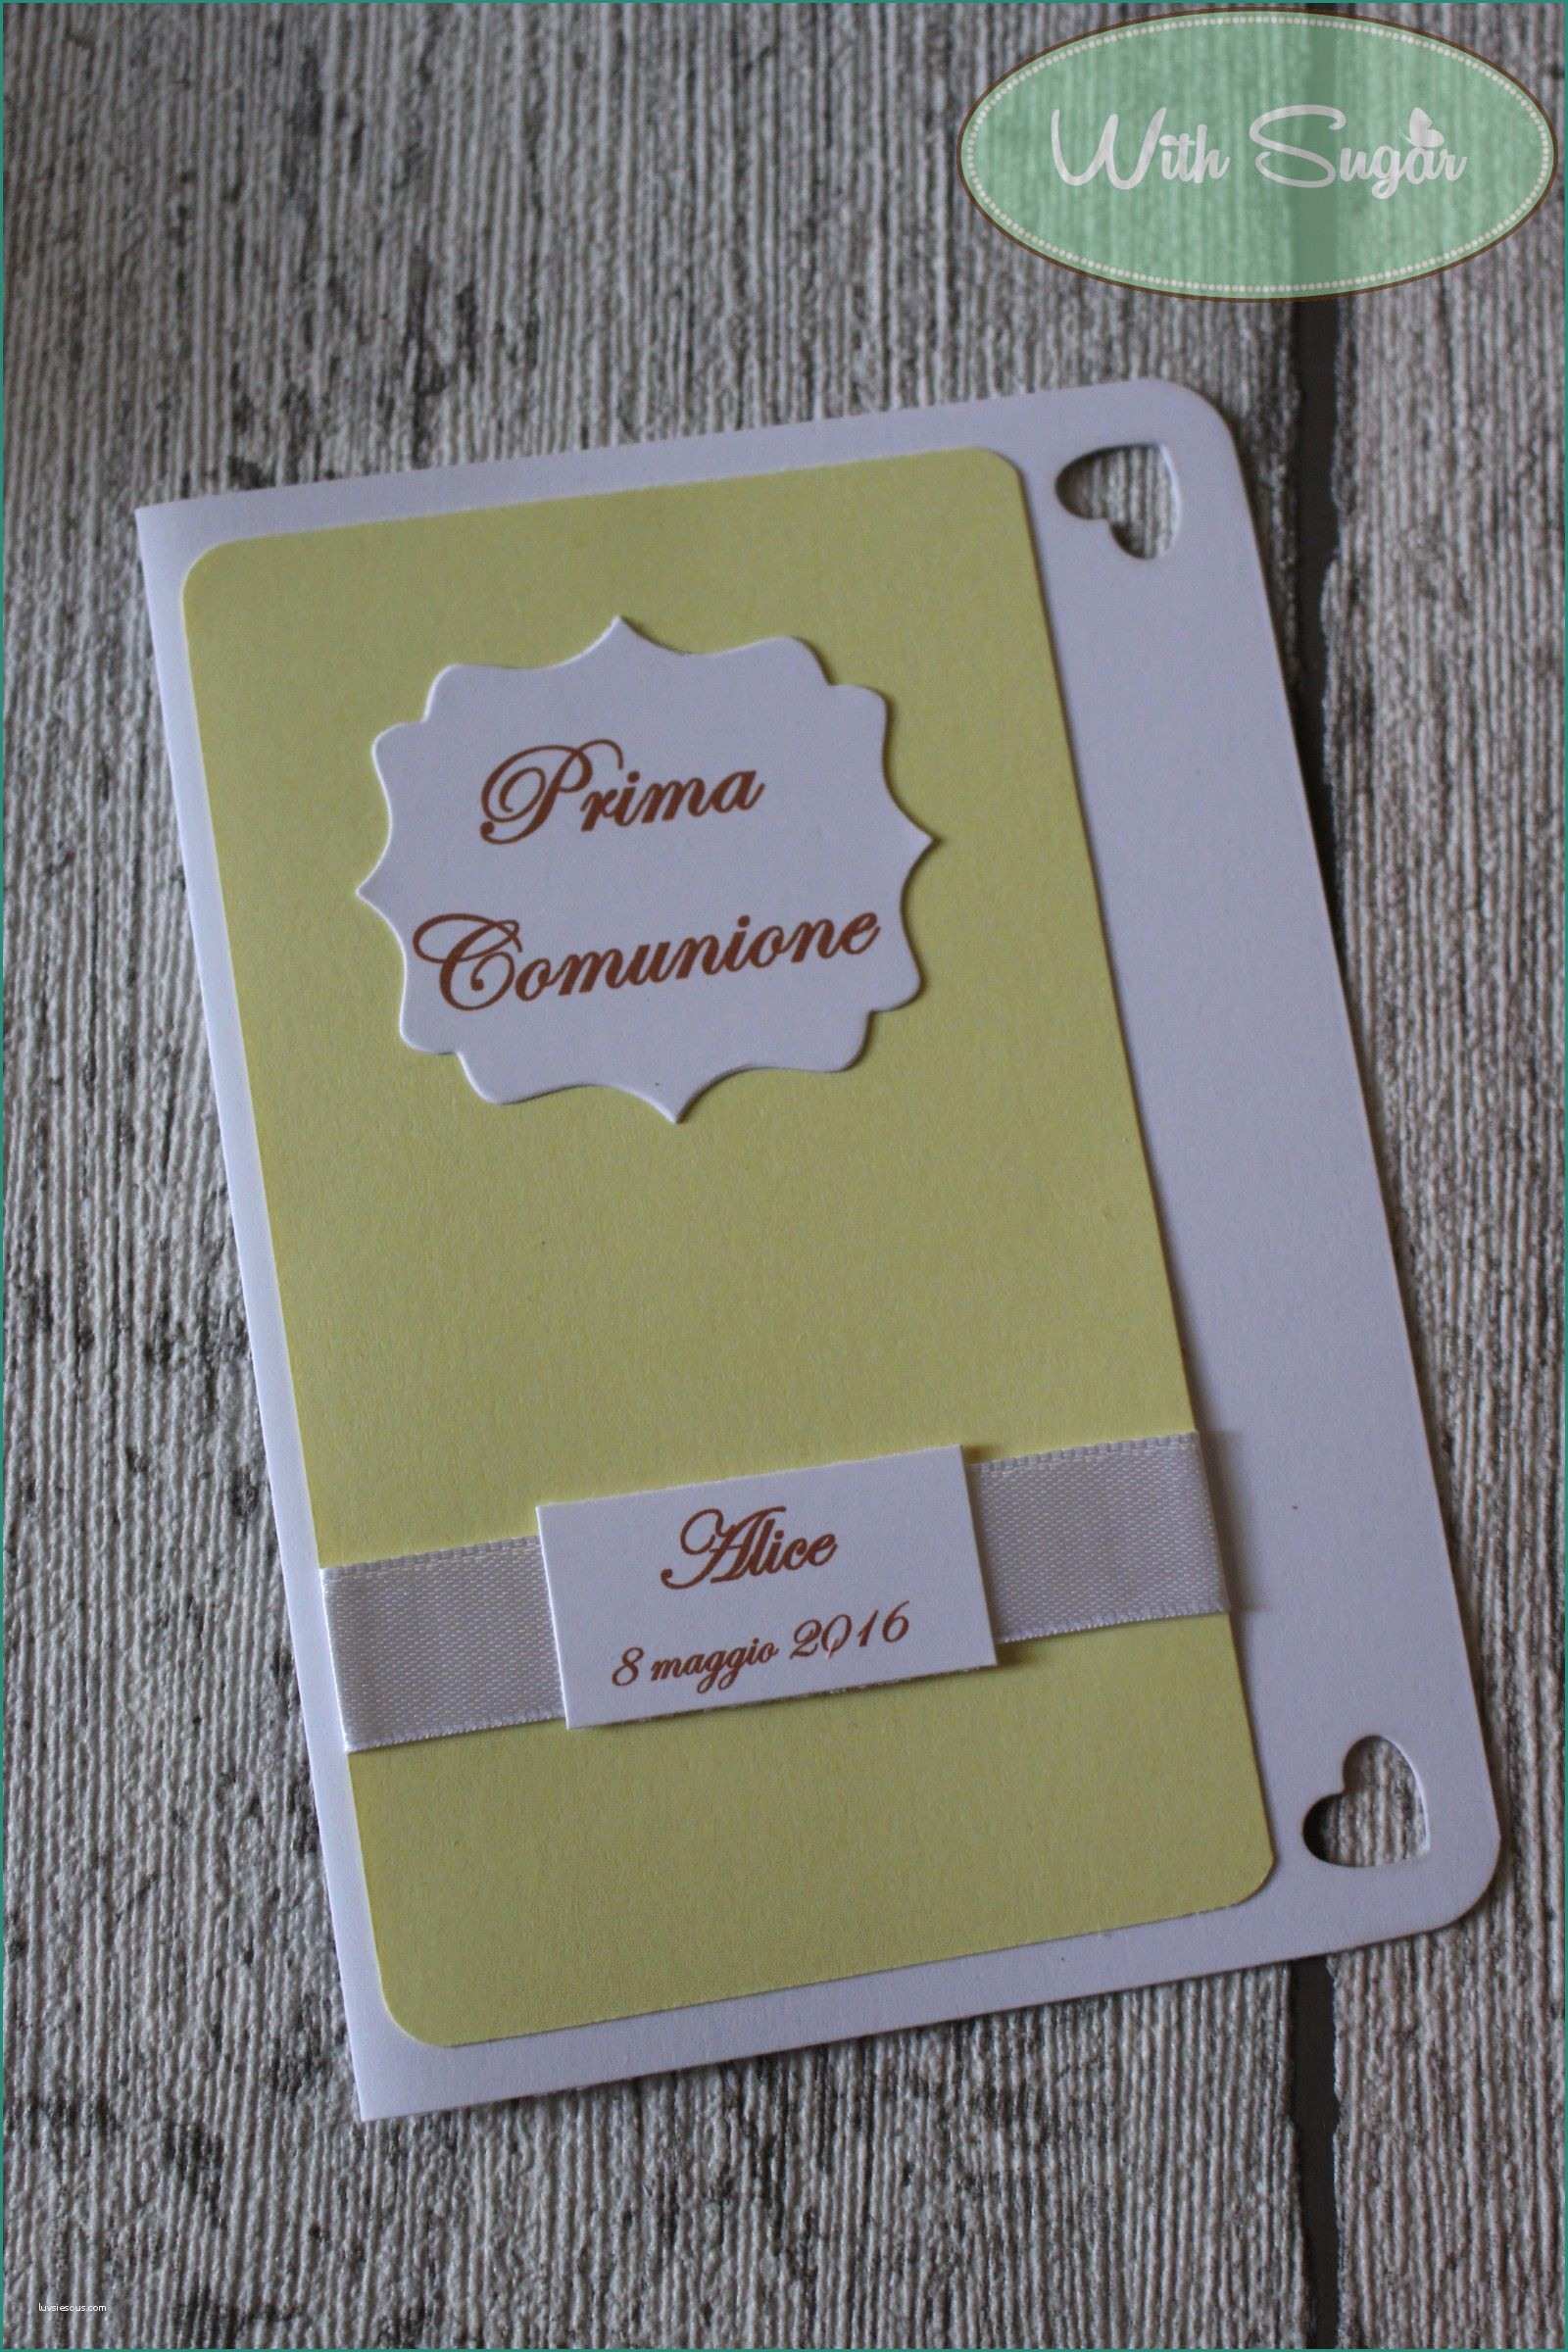 Immagini Inviti Prima Comunione E Invito Per Prima Unione Handmade Card